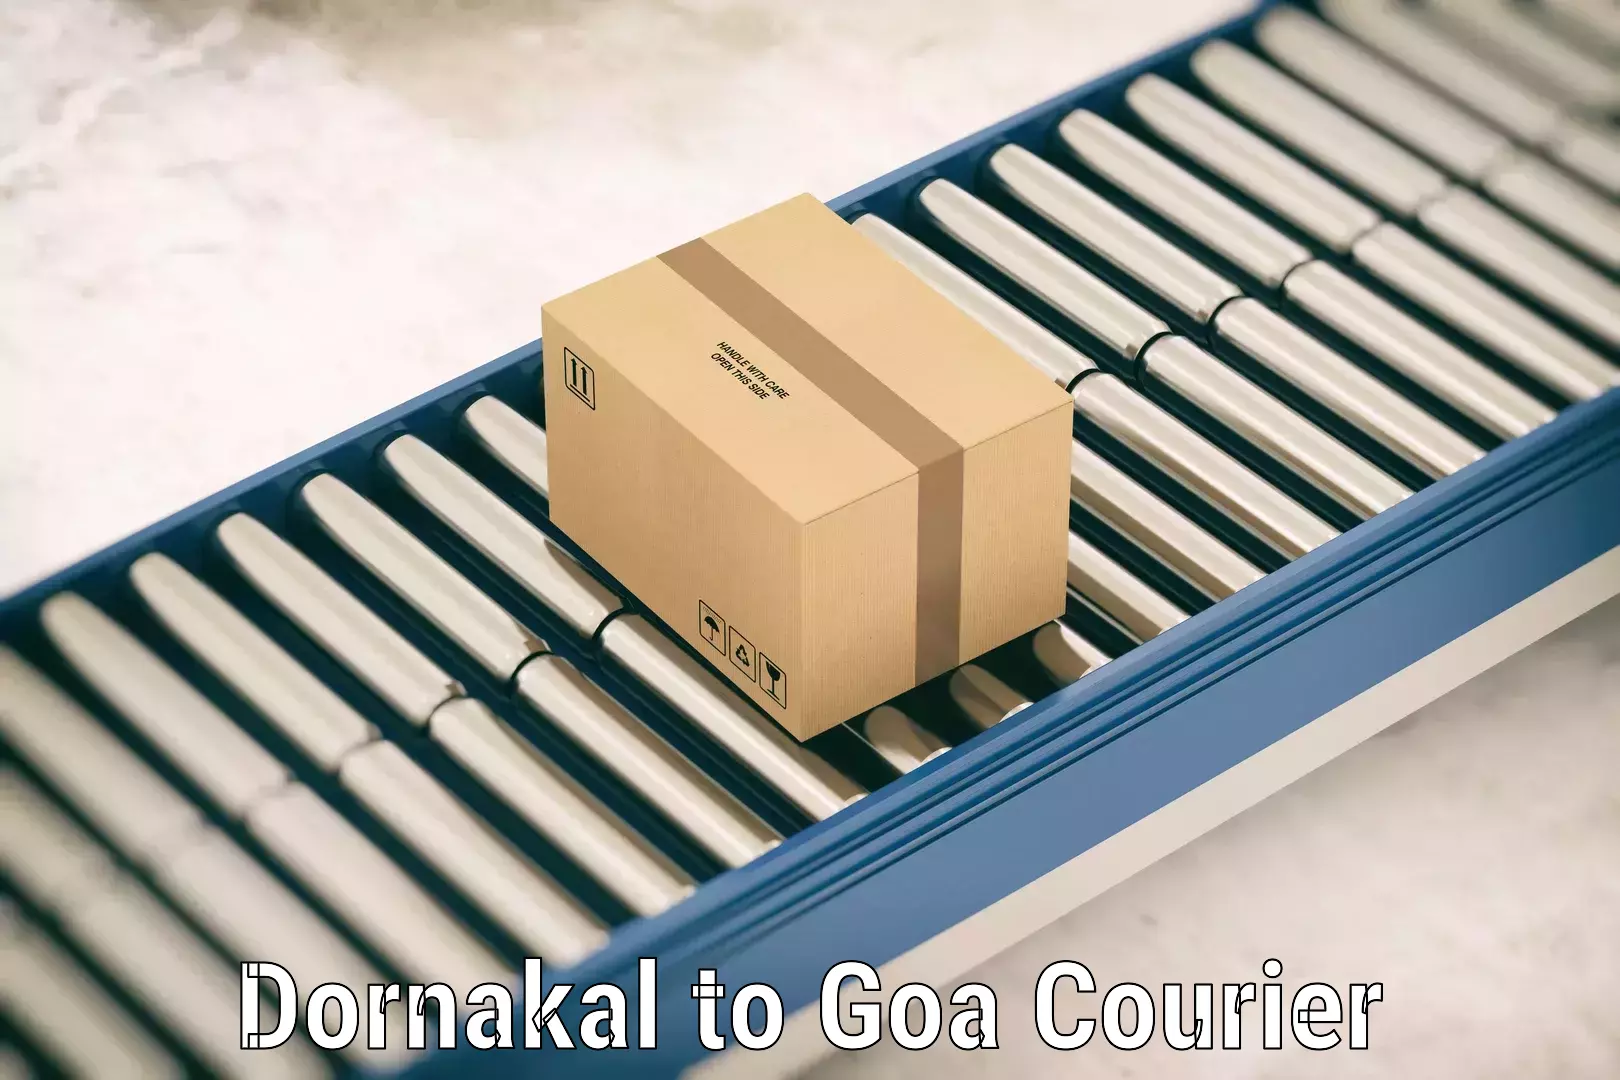 Baggage courier solutions Dornakal to Vasco da Gama